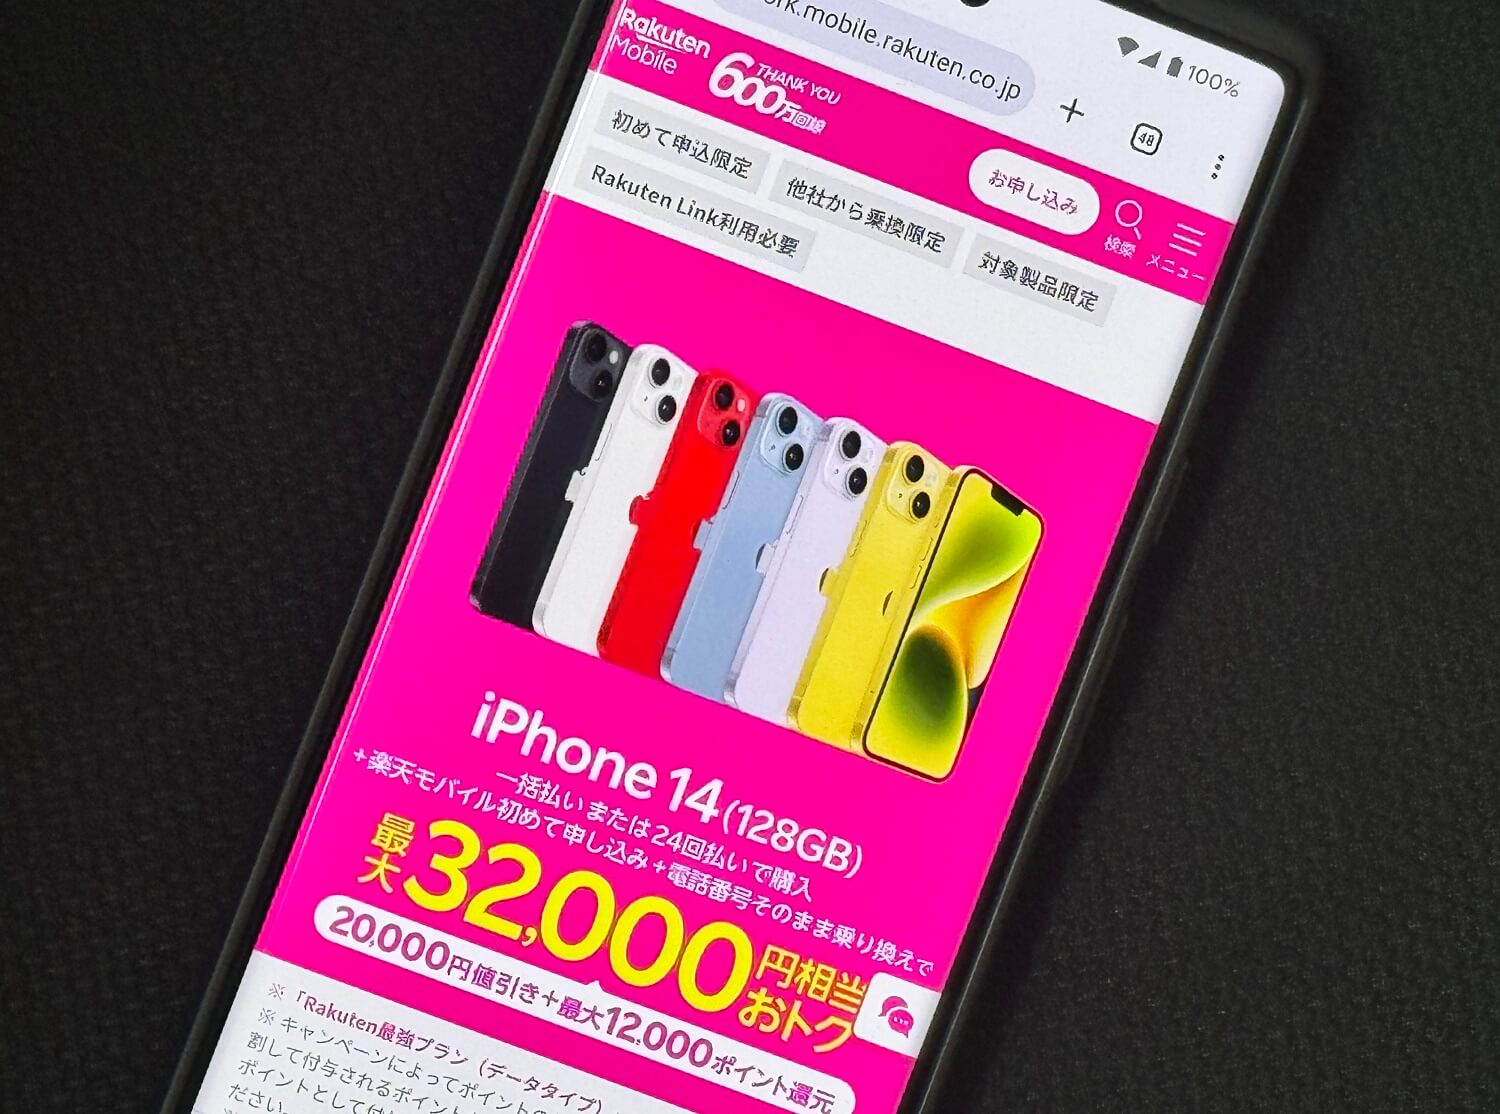 楽天モバイル 1月17日よりiPhone 14の割引キャンペーンを開始